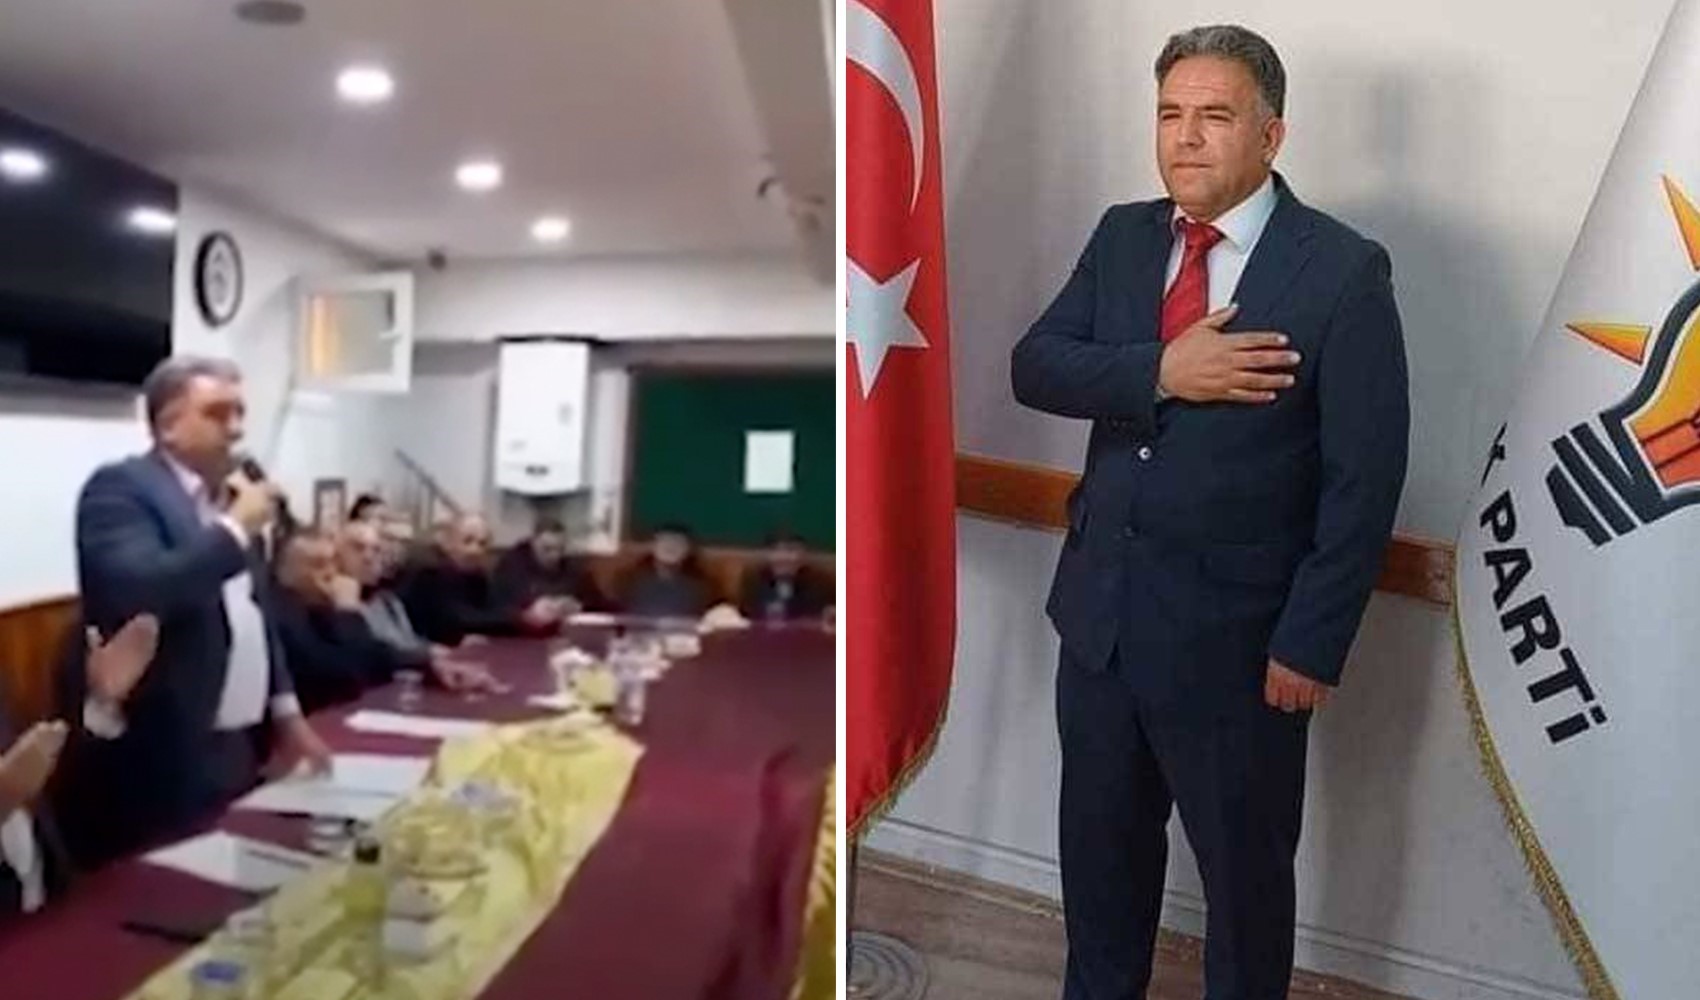 AKP’li adaydan jandarma komutanına küfür! 'Canlı yayındayız' diye uyarıldı, 'Hak etti' yanıtını verdi